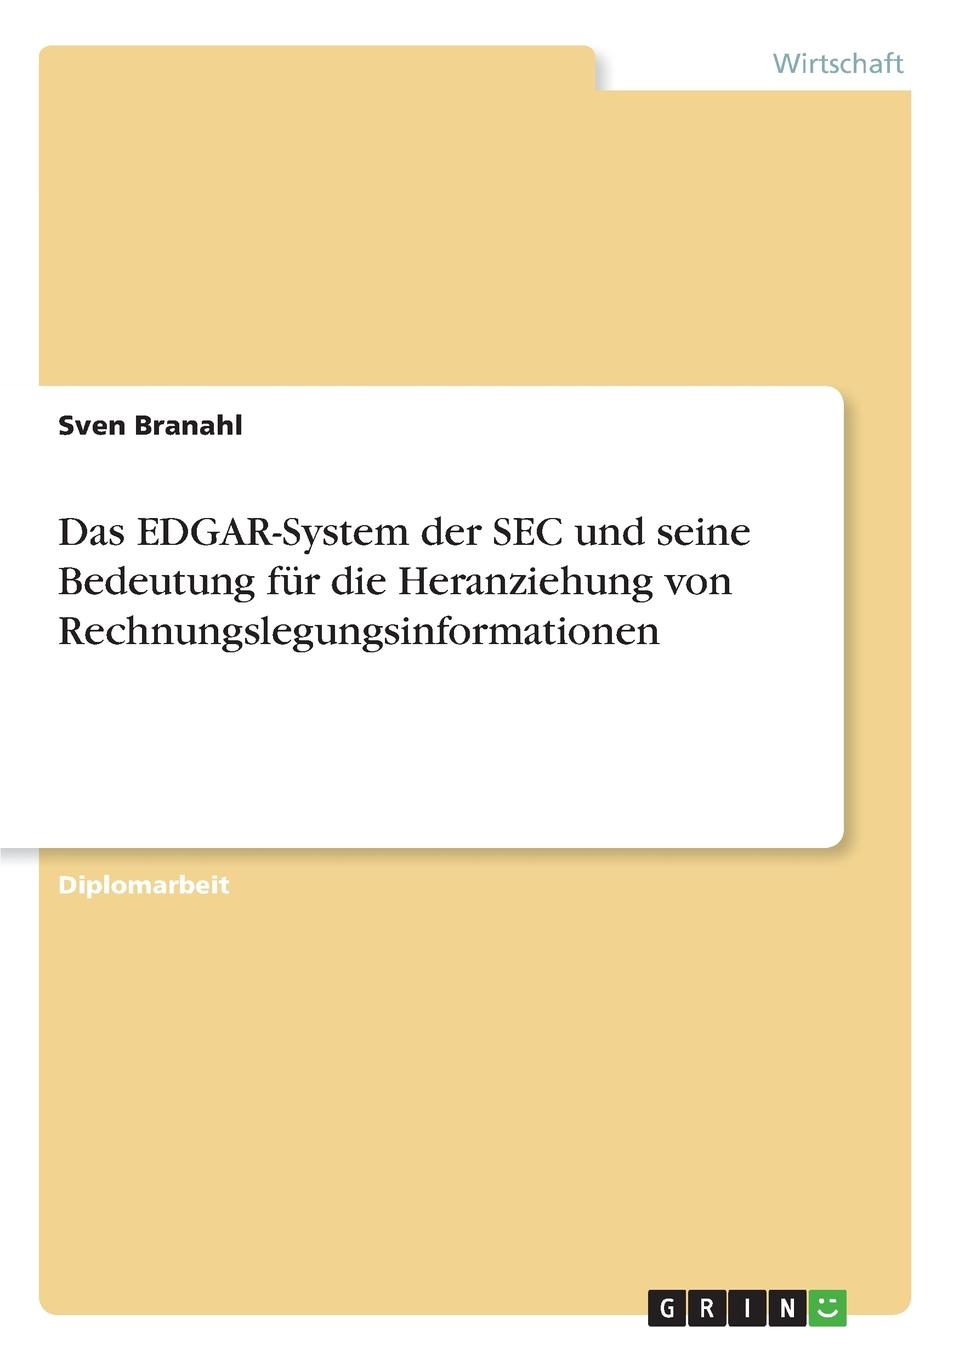 Das EDGAR-System der SEC und seine Bedeutung fur die Heranziehung von Rechnungslegungsinformationen